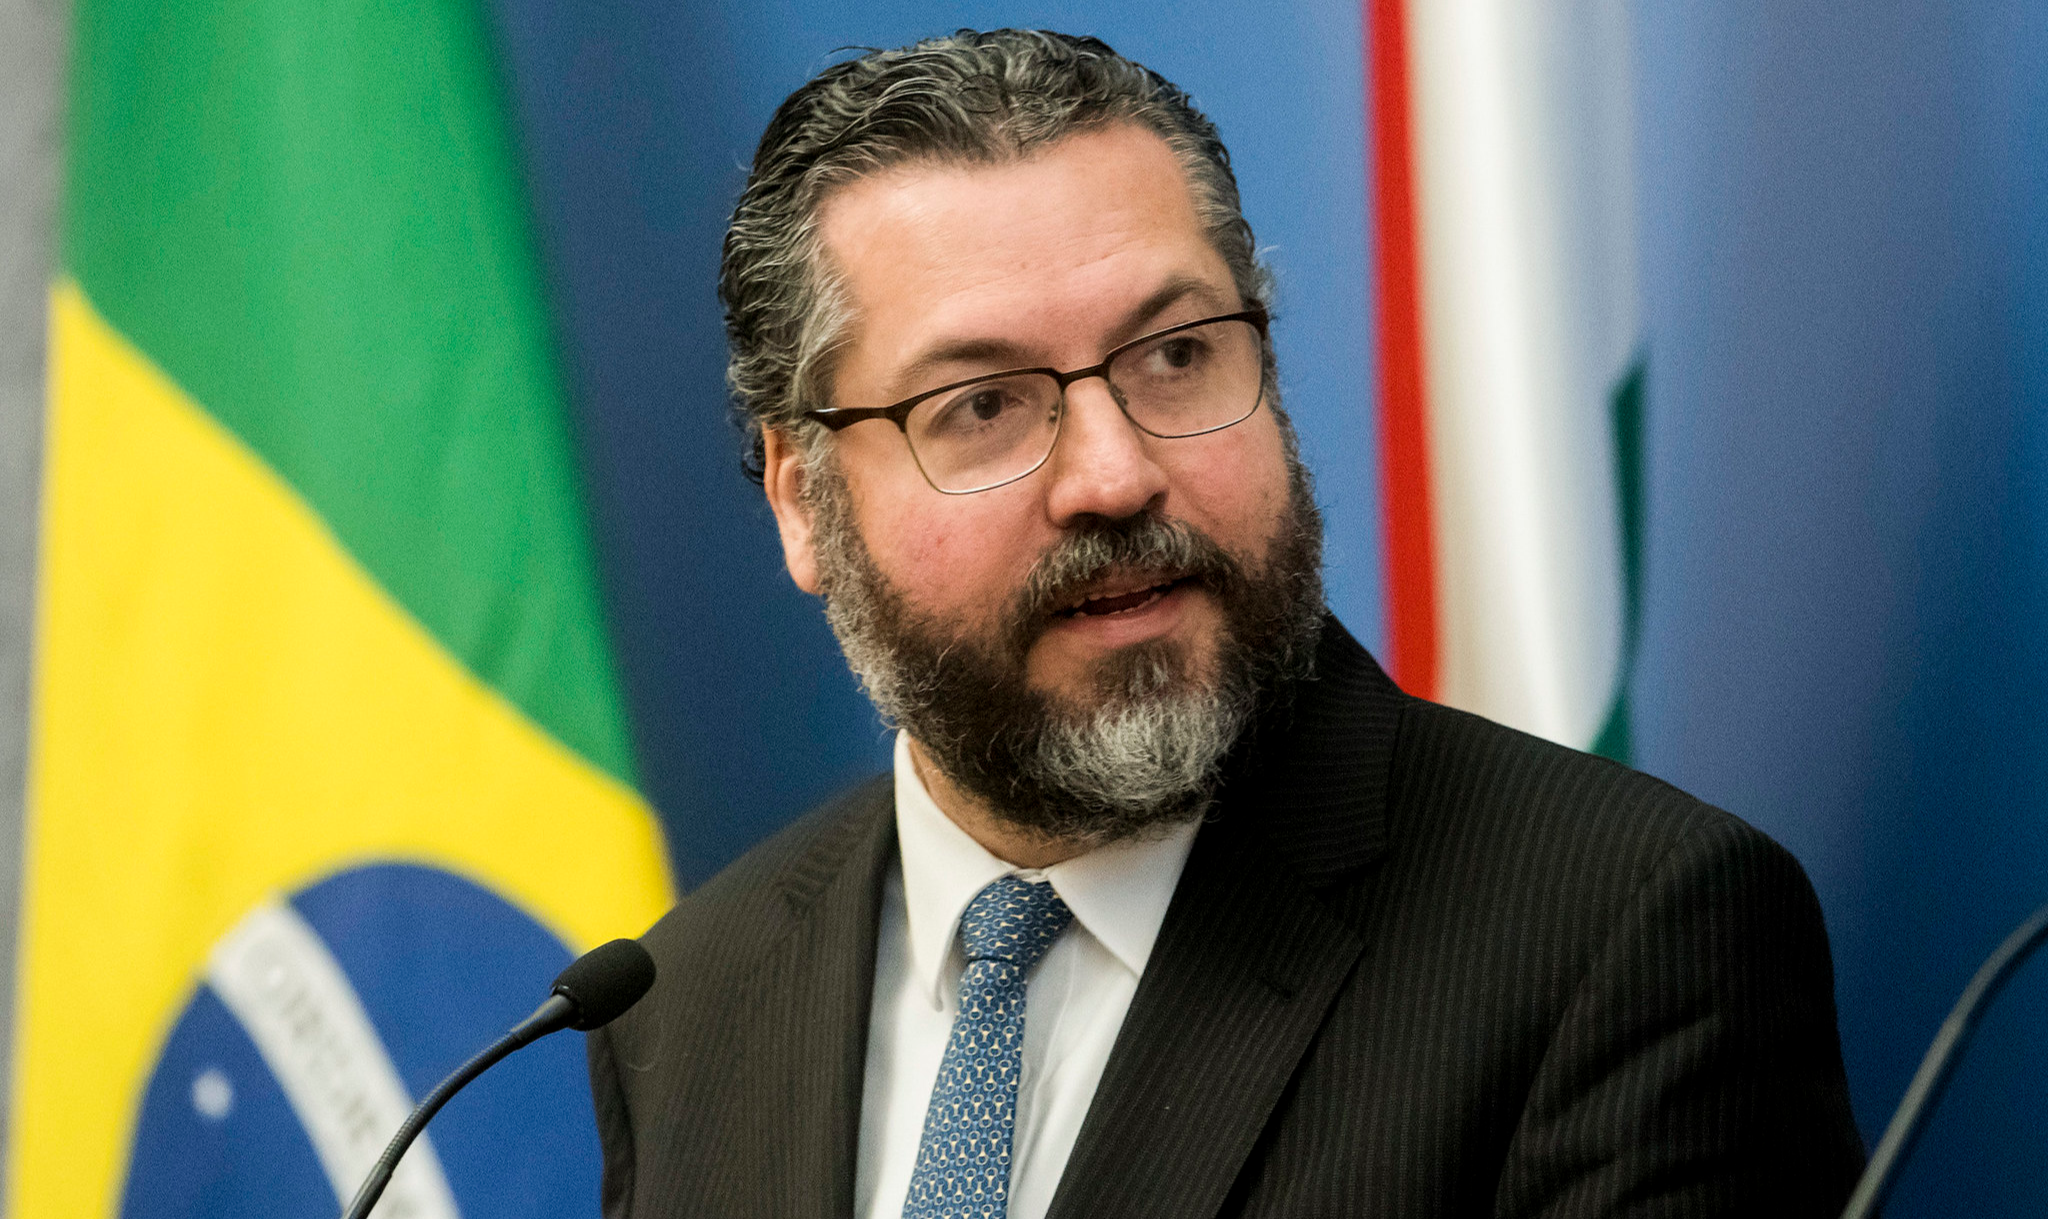 Com ausência do Ministro das Relações Exteriores, governo não se pronuncia sobre pedido de explicações do Irã à diplomacia brasileira